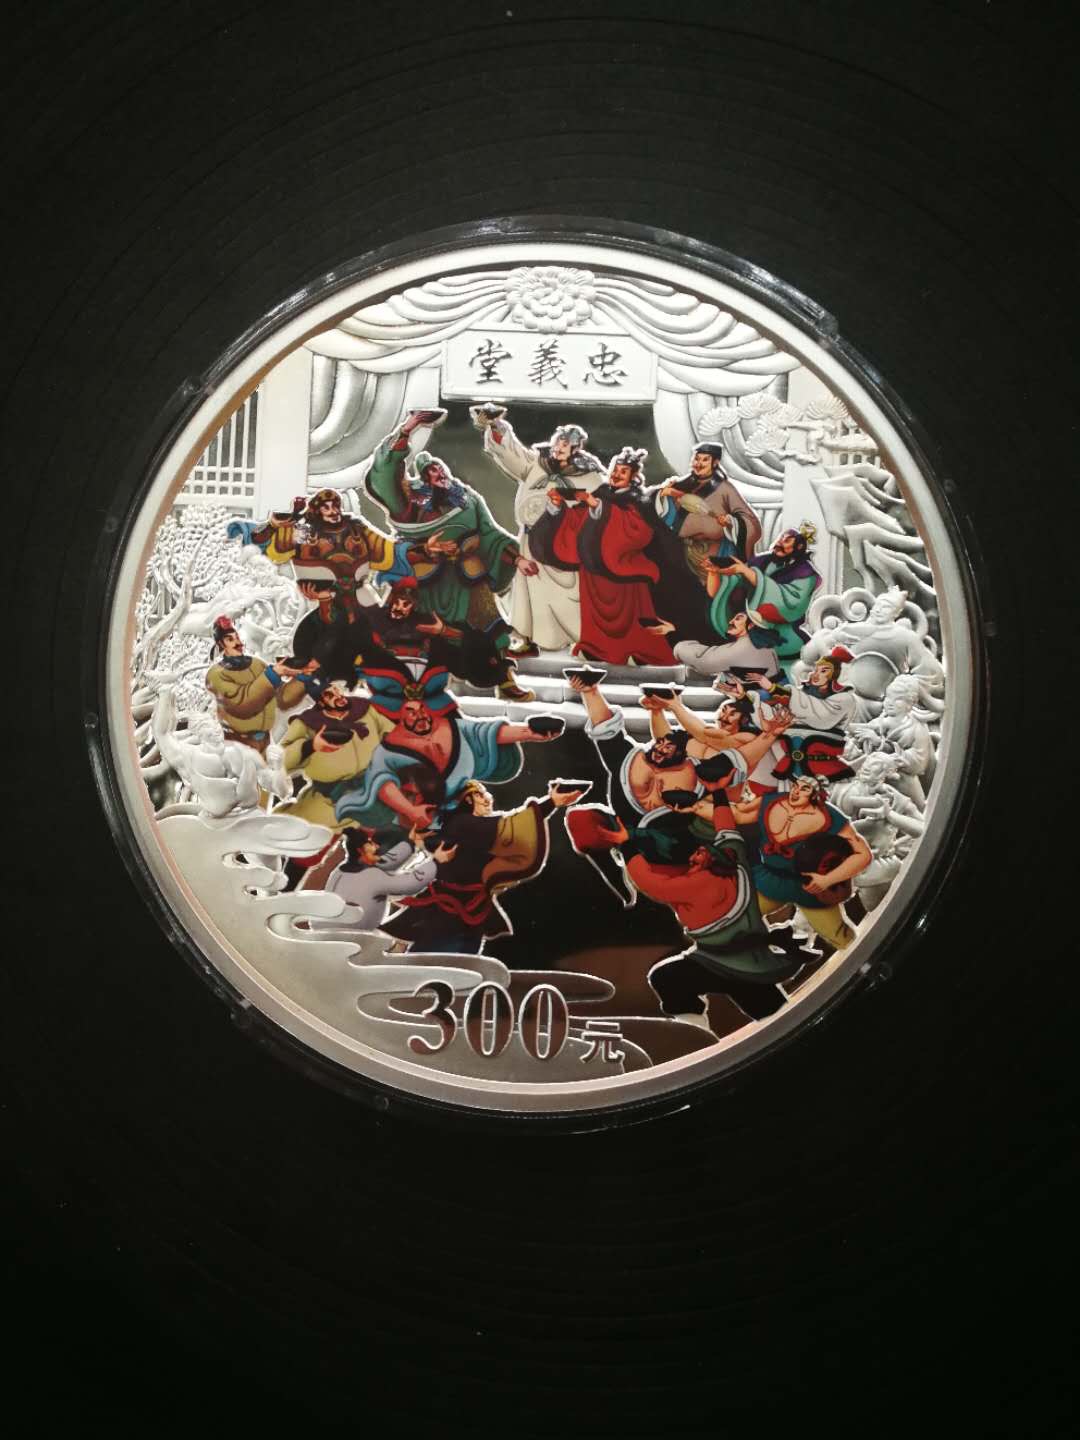 2011年:水浒传《齐聚忠义堂》公斤彩银币[中国